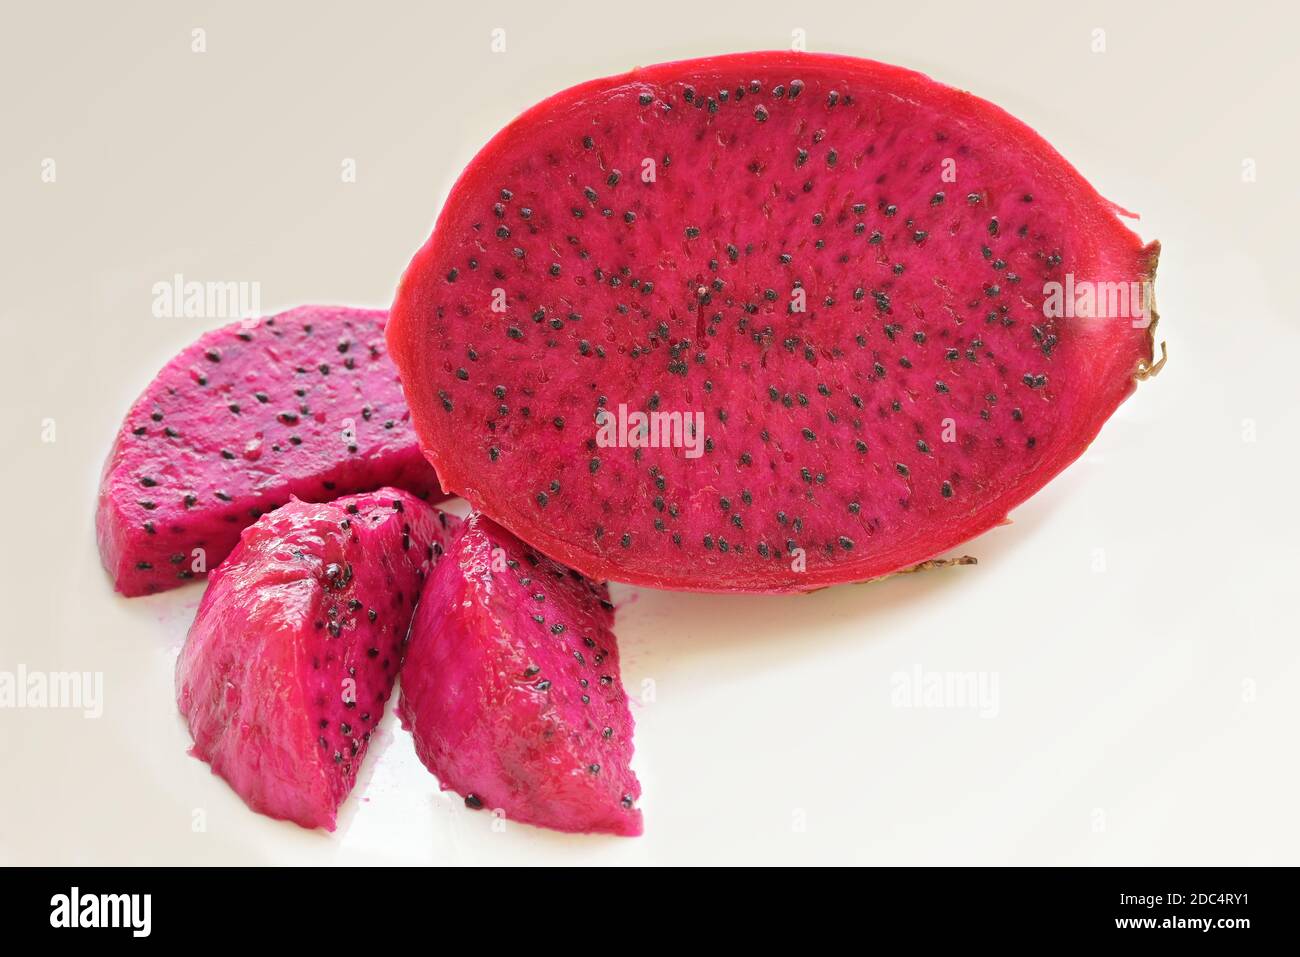 Rote Drachenfrucht oder Pitaya mit rotem Fleisch. Die Kakteen sind in  Amerika beheimatet und werden heute in tropischen und subtropischen  Regionen kultiviert Stockfotografie - Alamy